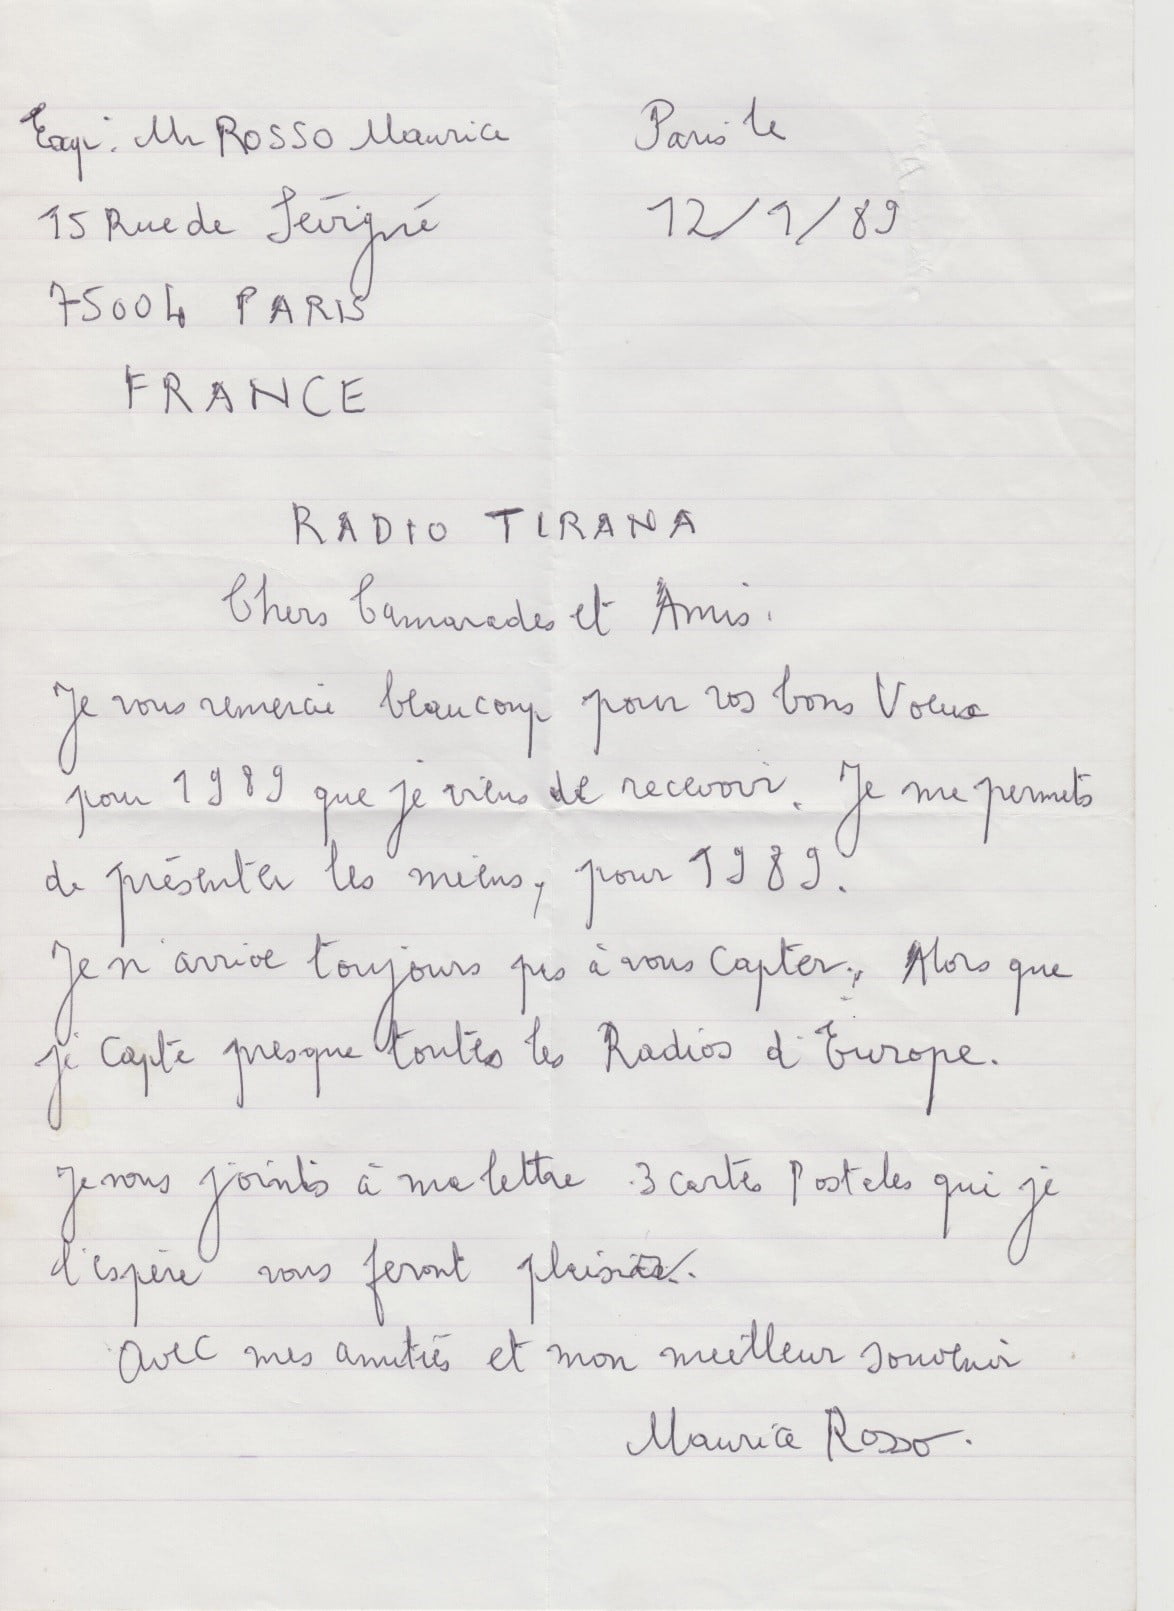 Lettera 2 – 12 settembre 1989 – Maurice scrive da Parigi a Radio Tirana